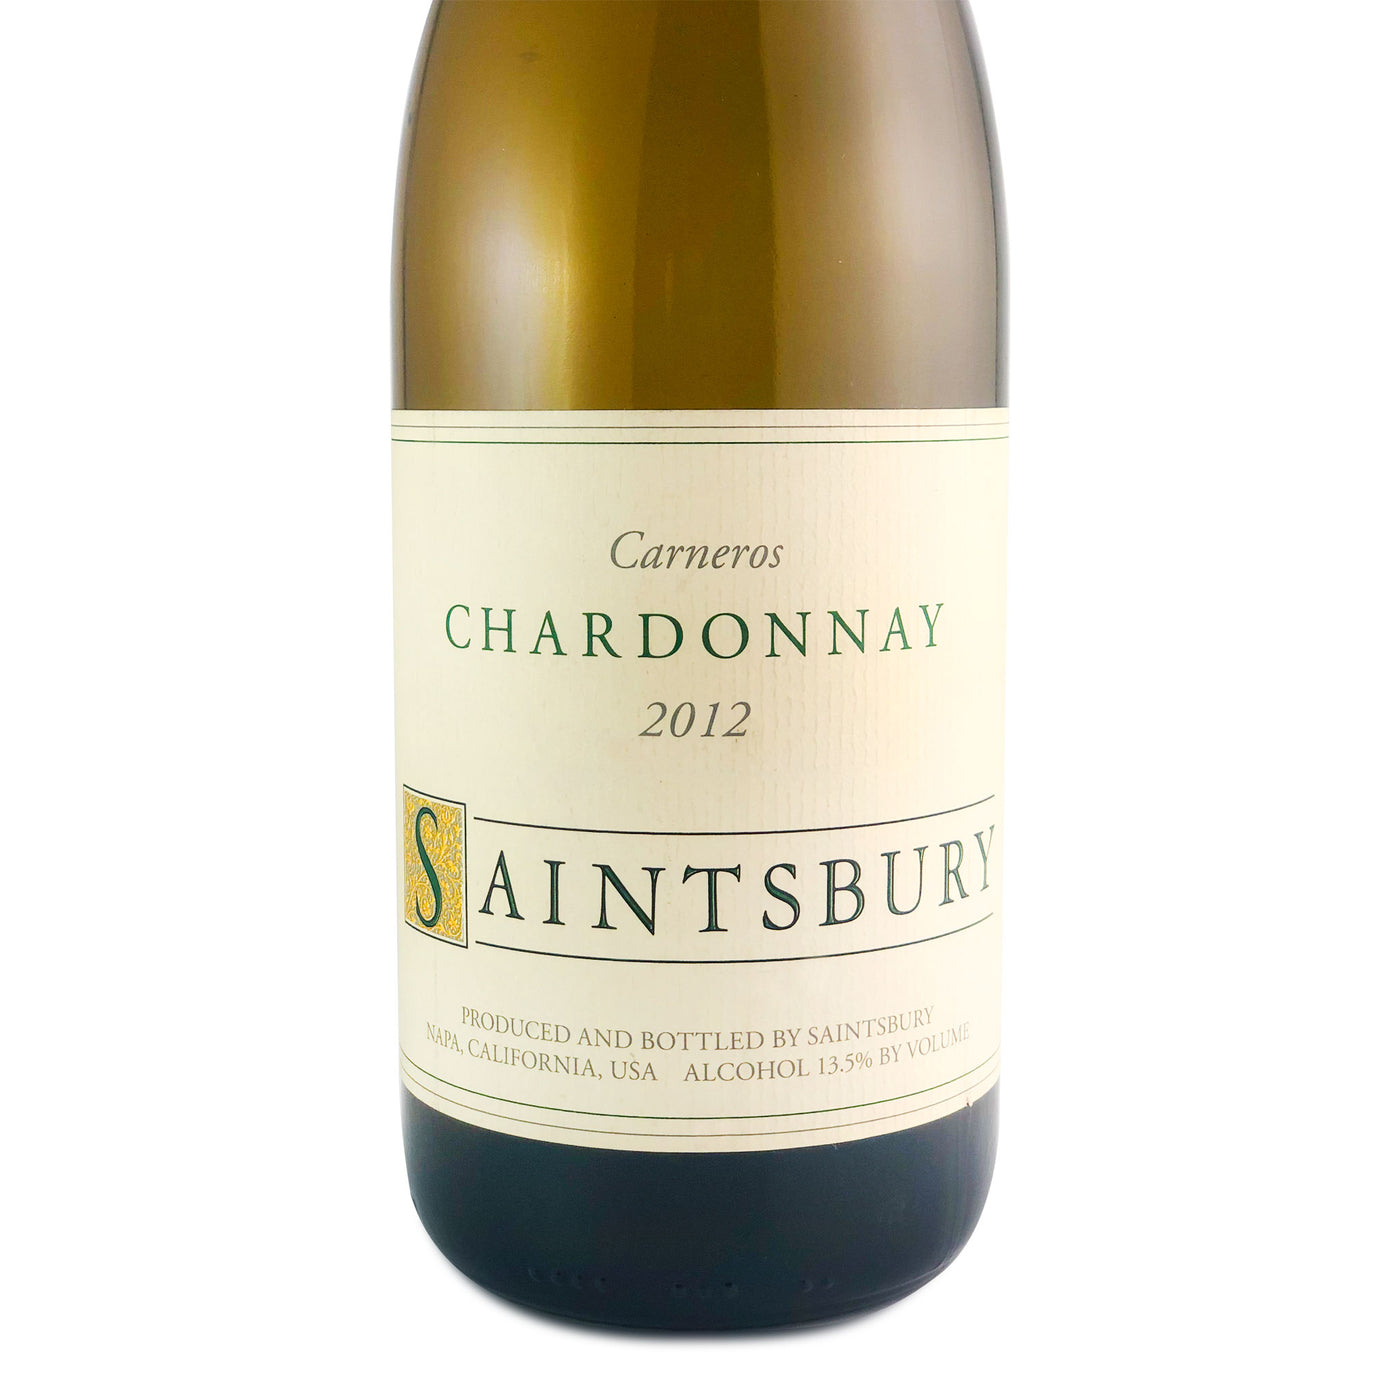 Saintsbury Carneros Chardonnay 2012